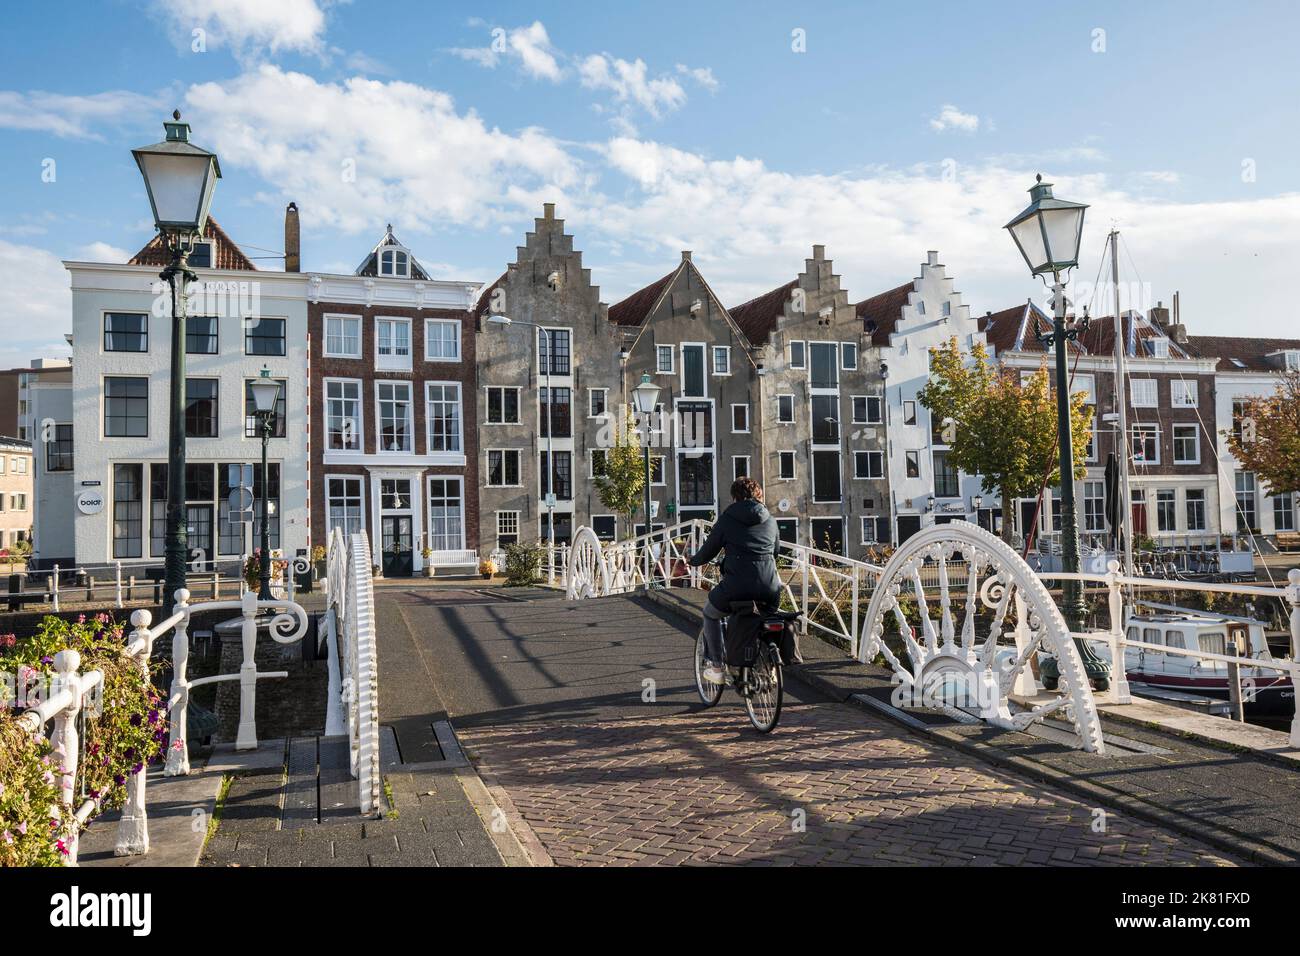 Middelburg auf der Halbinsel Walcheren, die Brücke Spijkerbrug im Binnenhafen und Häuser auf der Straße Kinderdijk, Zeeland, Niederlande. Middelbur Stockfoto